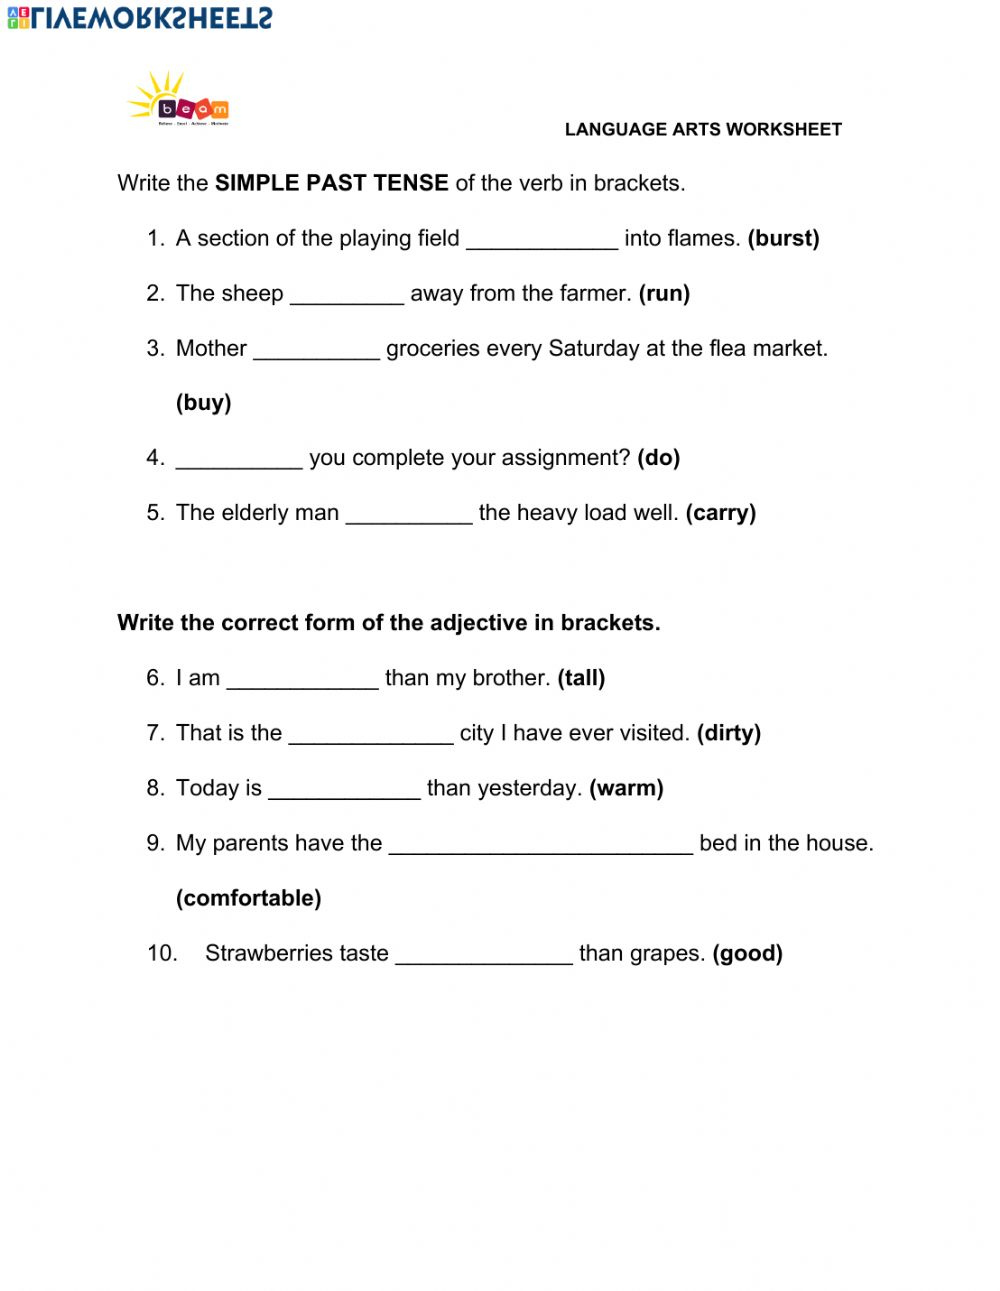 Language Arts Worksheet